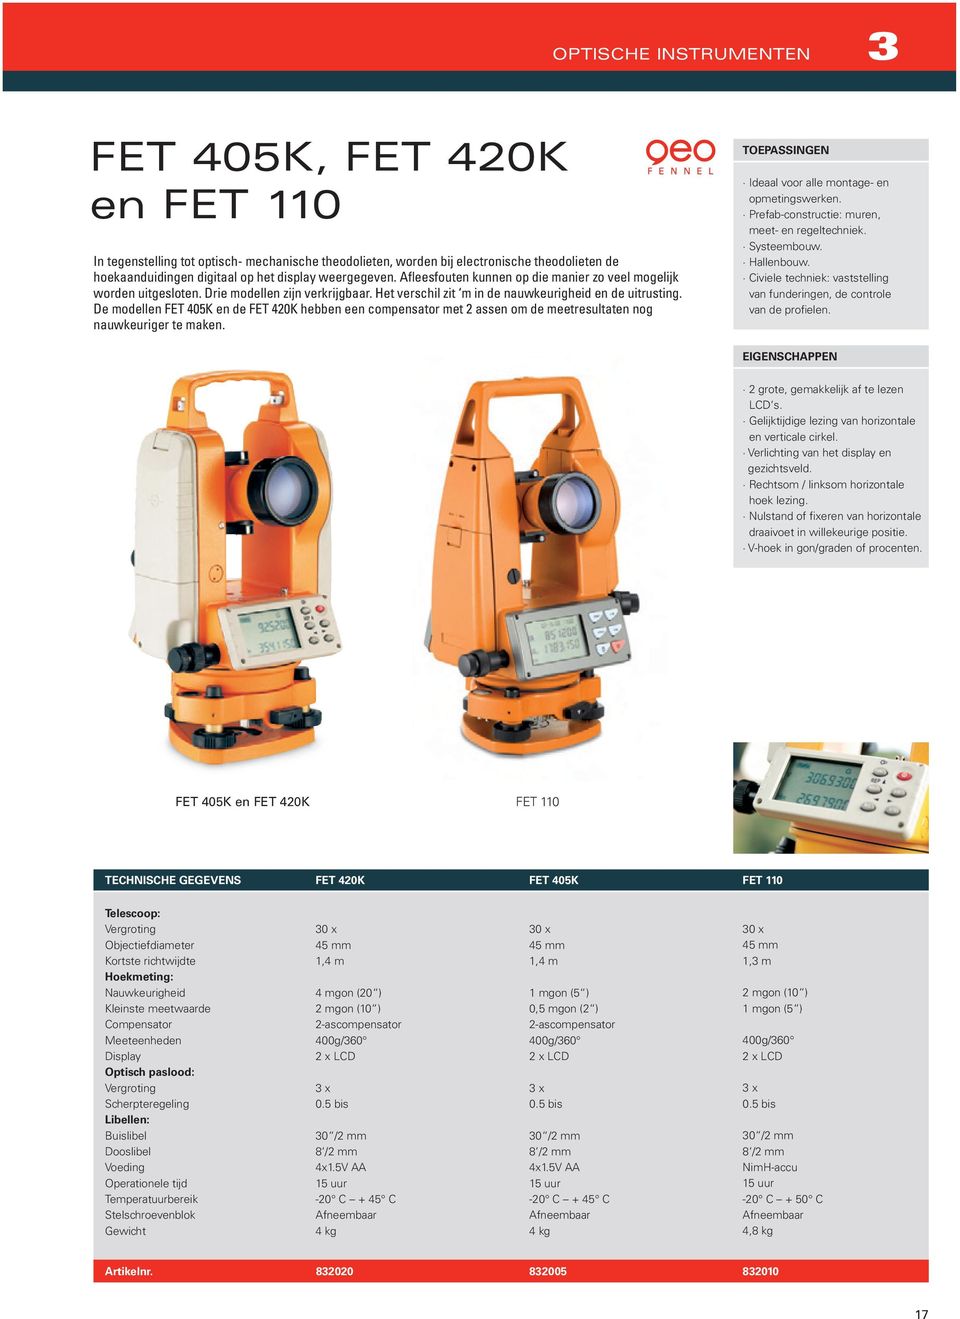 De modellen FET 405K en de FET 420K hebben een compensator met 2 assen om de meetresultaten nog nauwkeuriger te maken. Ideaal voor alle montage- en opmetingswerken.